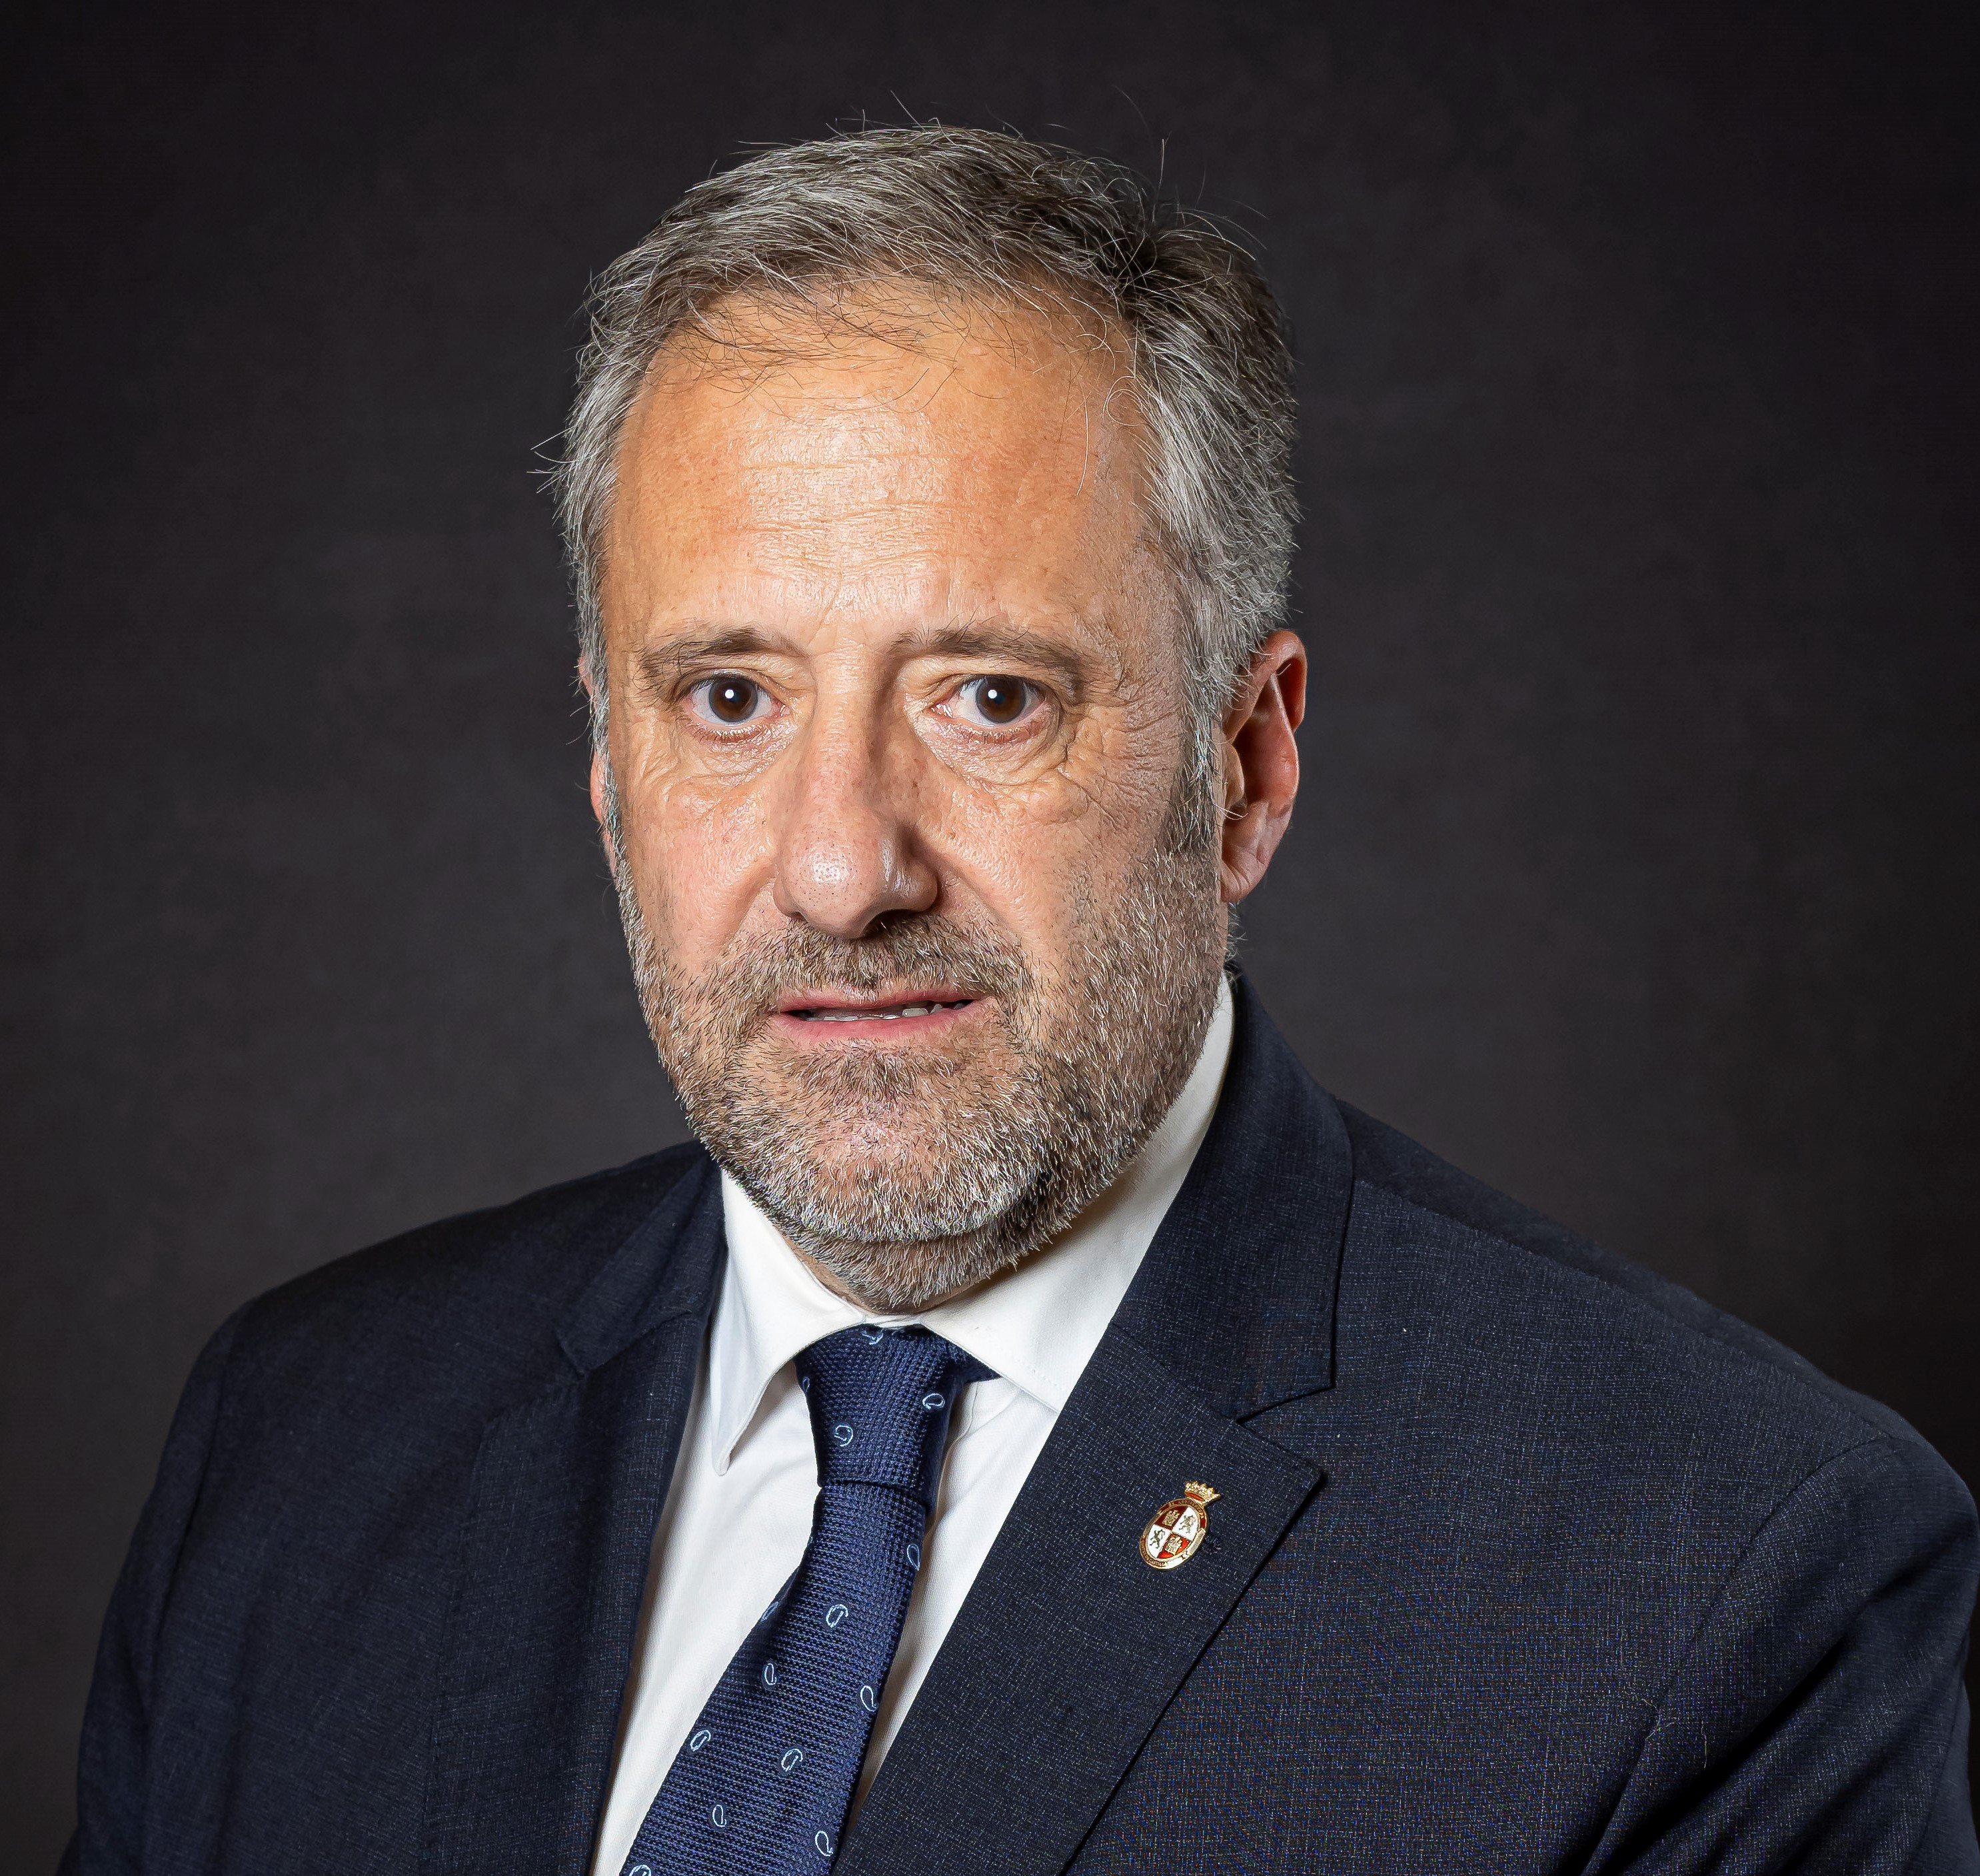 El Presidente de las Cortes, Carlos Pollán Fernández